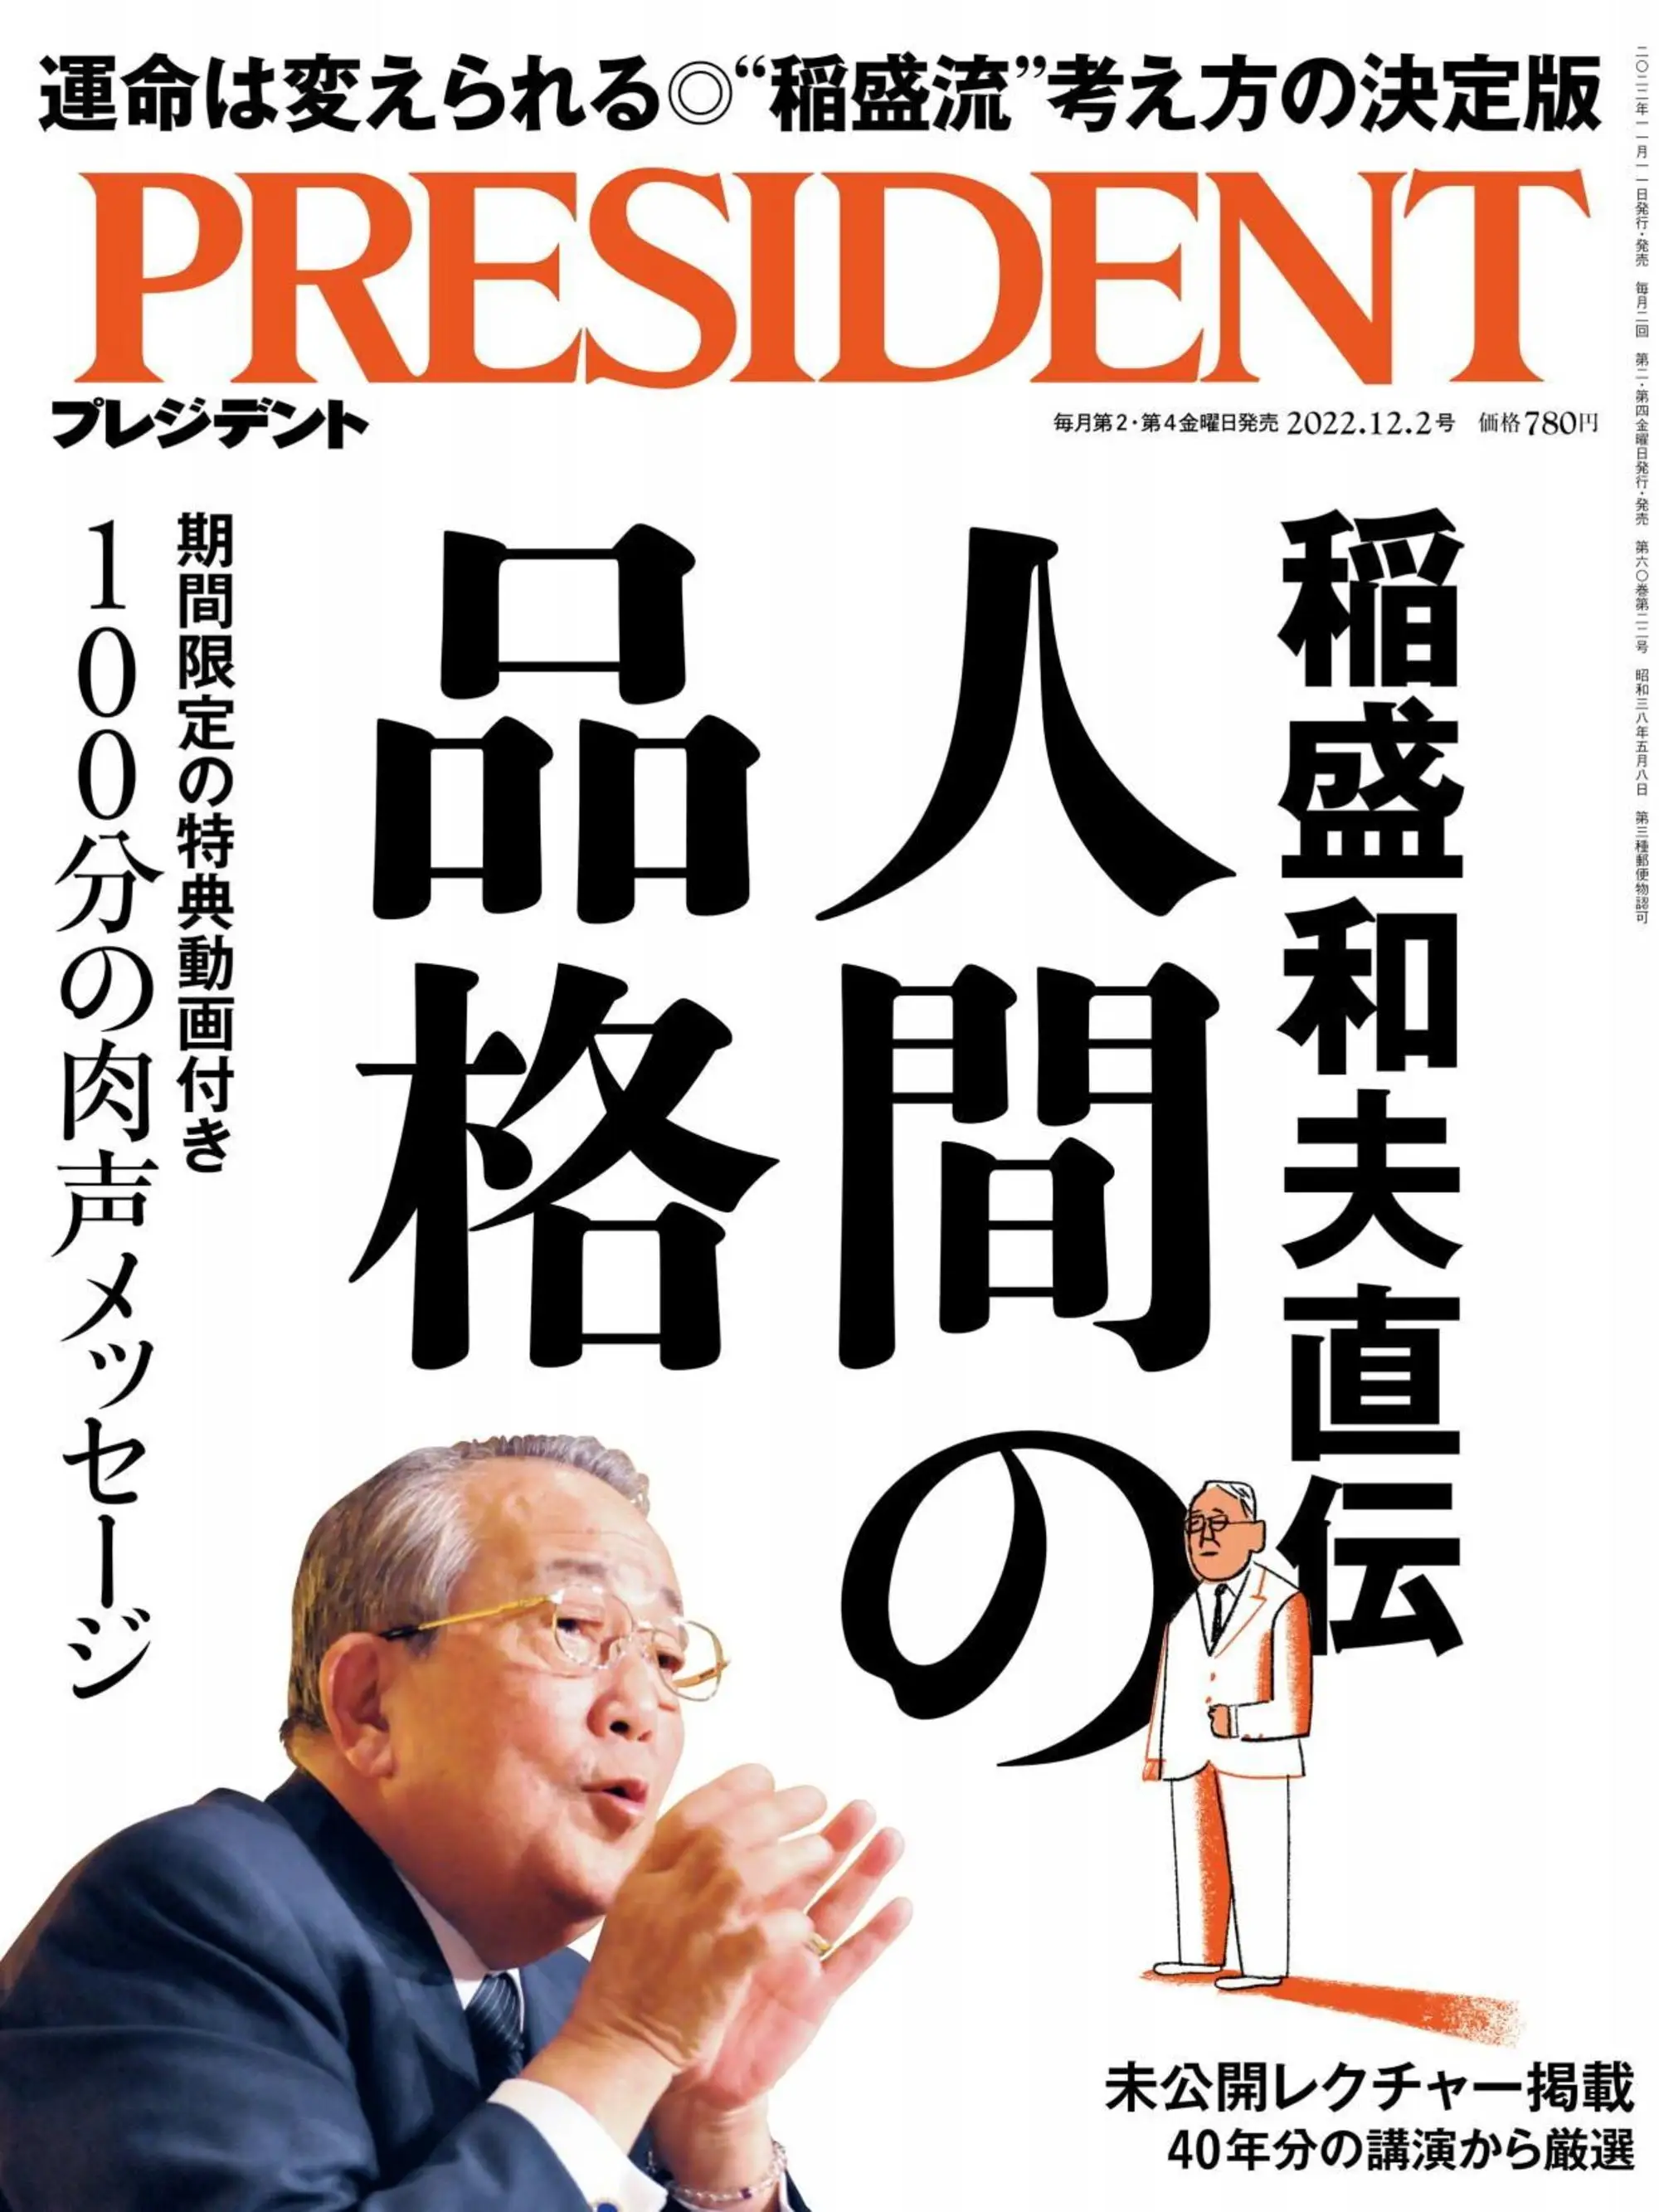 日本财经管理杂志 プレジデント President – 2022 11月 10